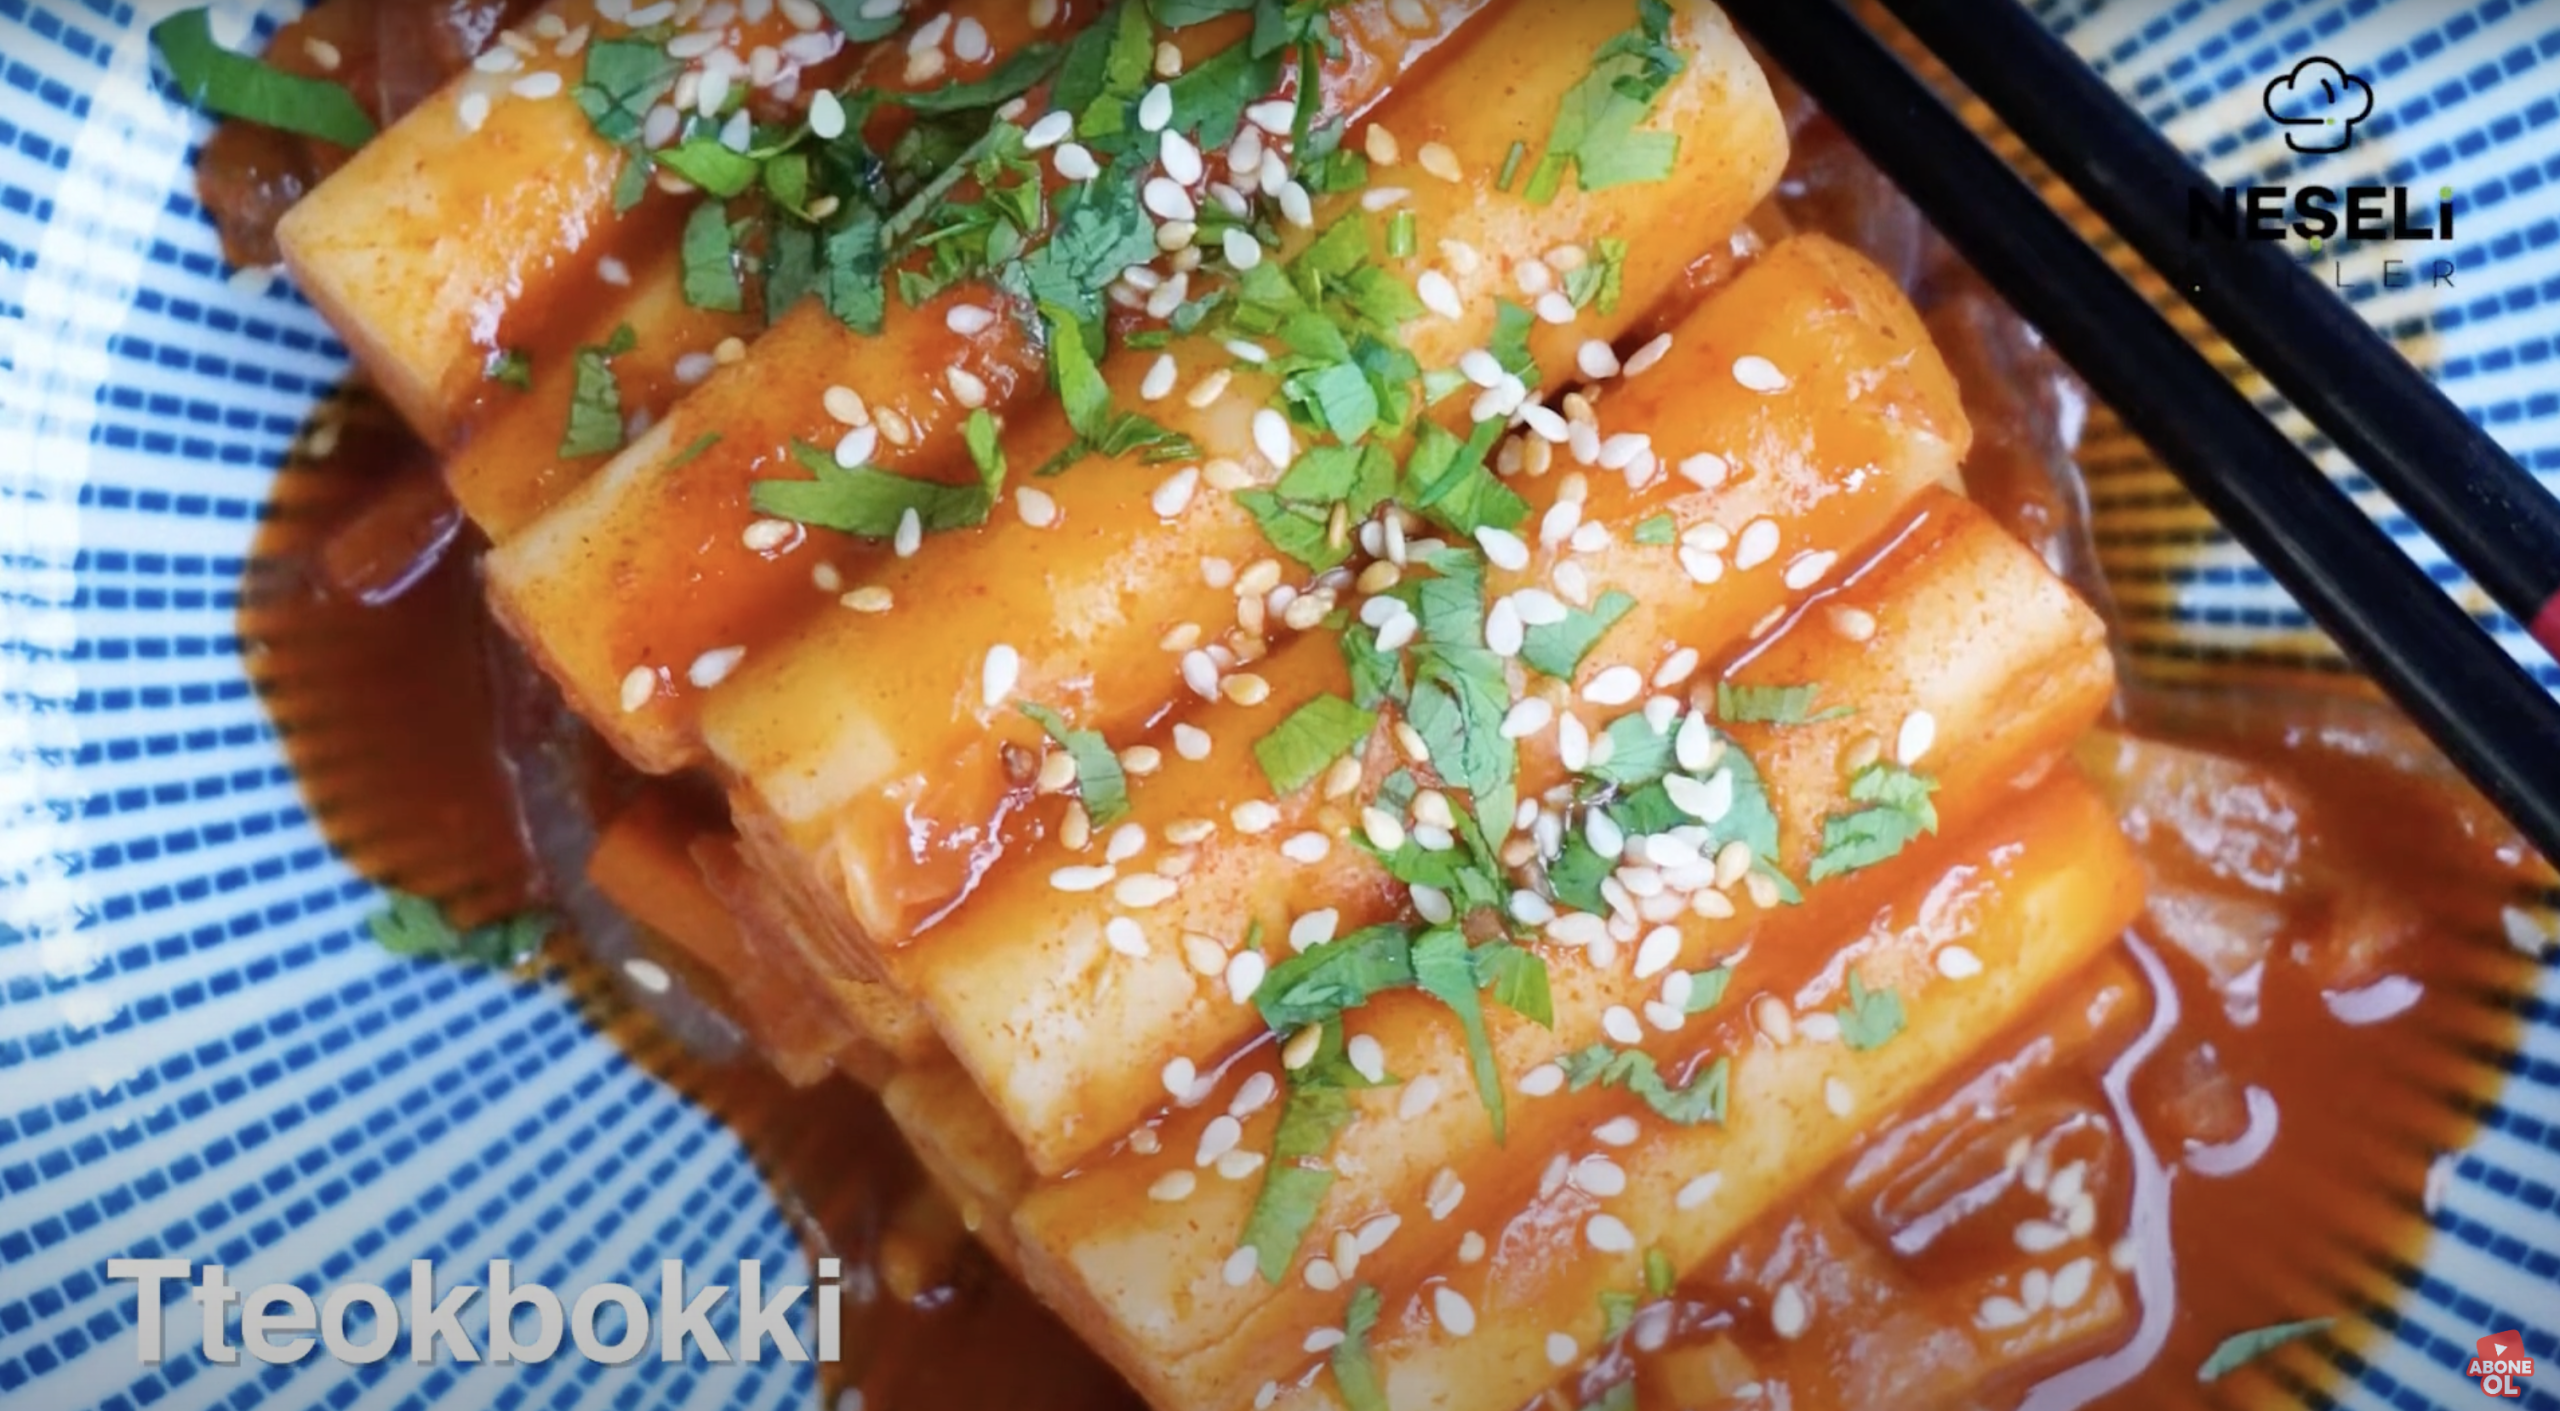 Squid Game Yemekleri / Tteokbokki Tarifi / Güney Korenin Meşhur Yemeği